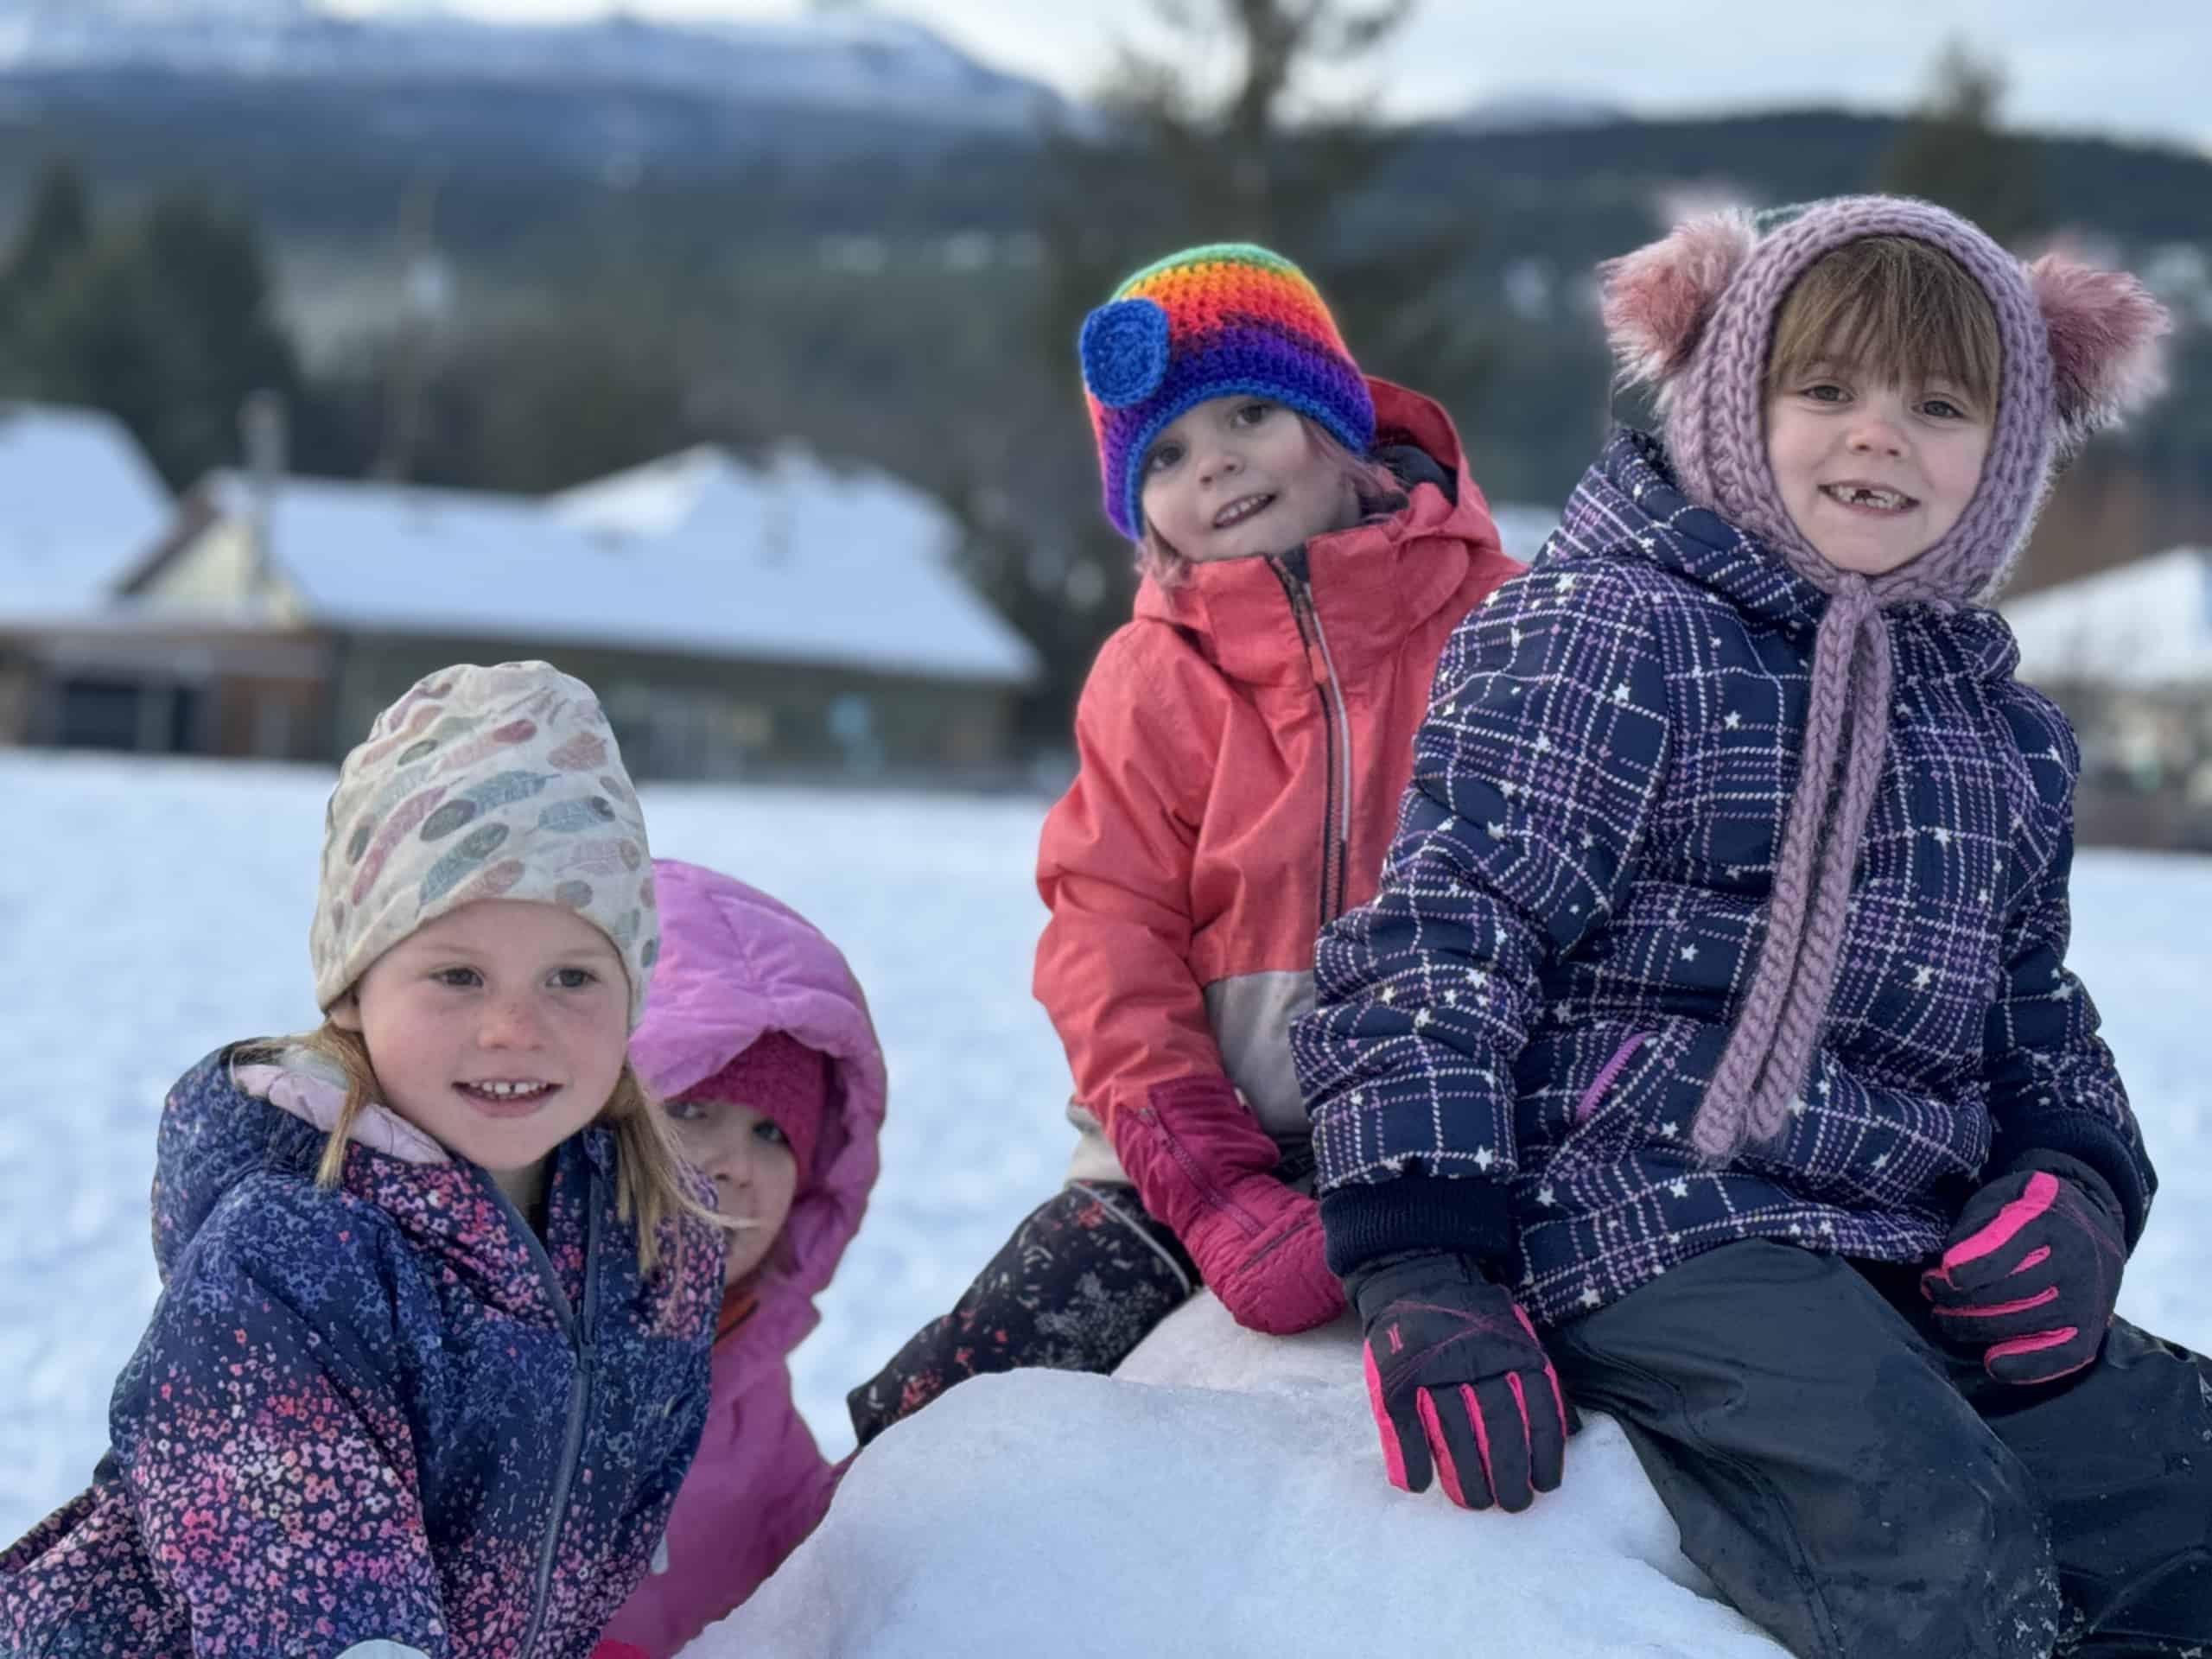 Kids having fun in the snow